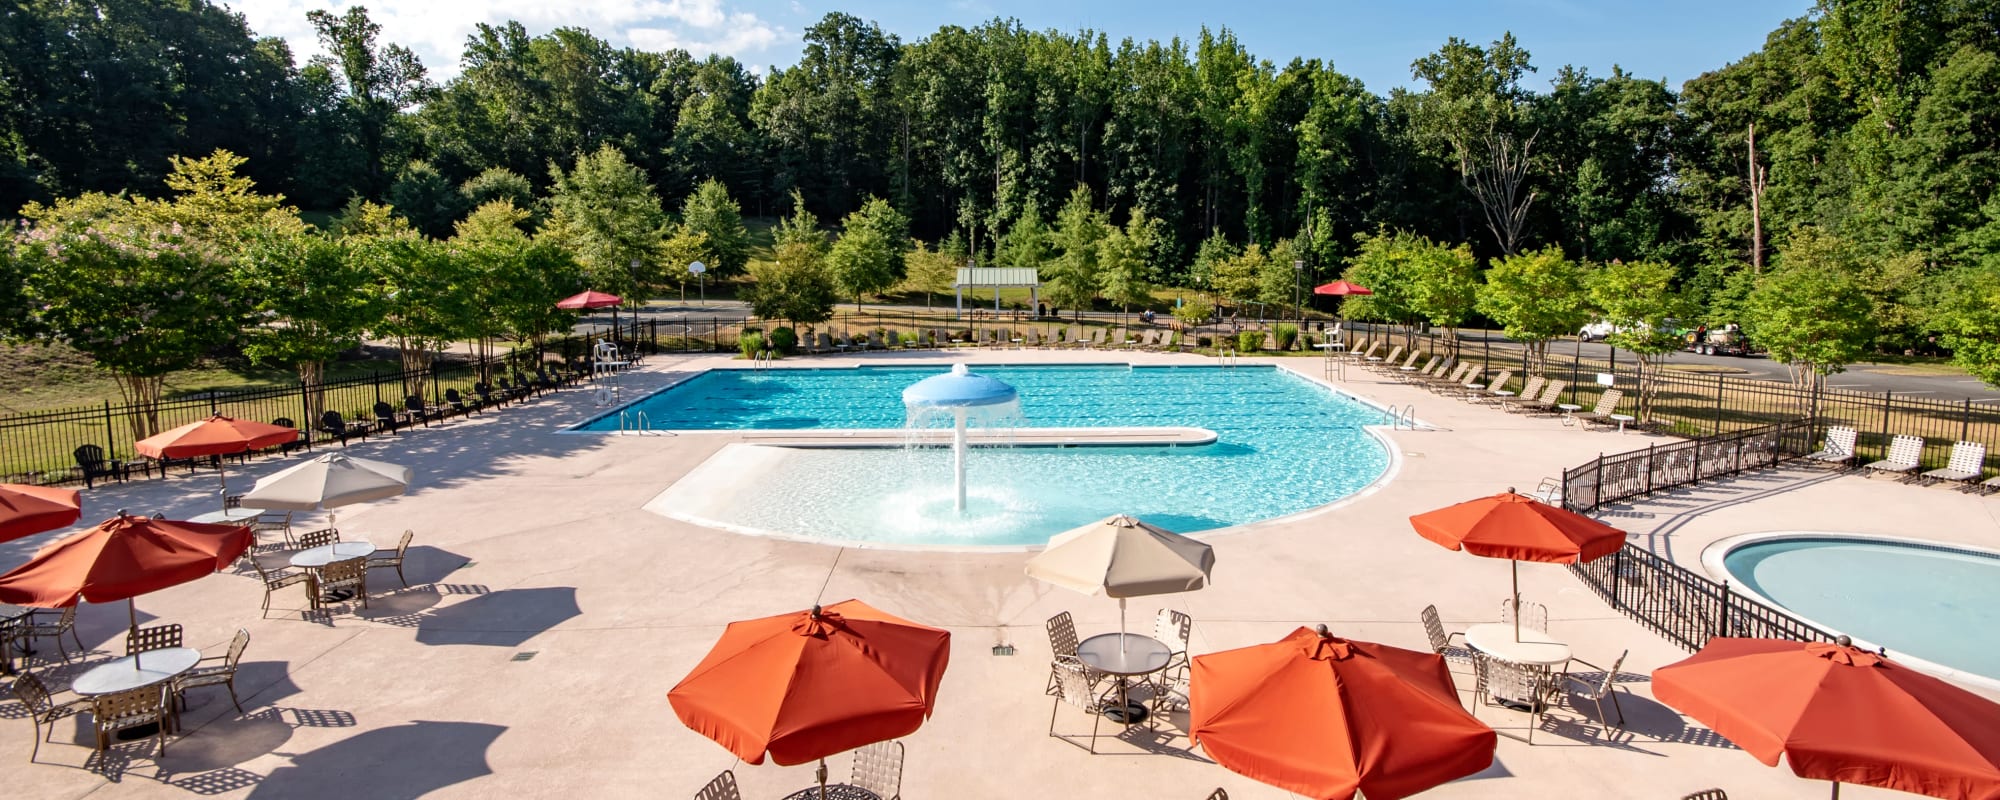 Swimming pool at Thomason Park in Quantico, Virginia